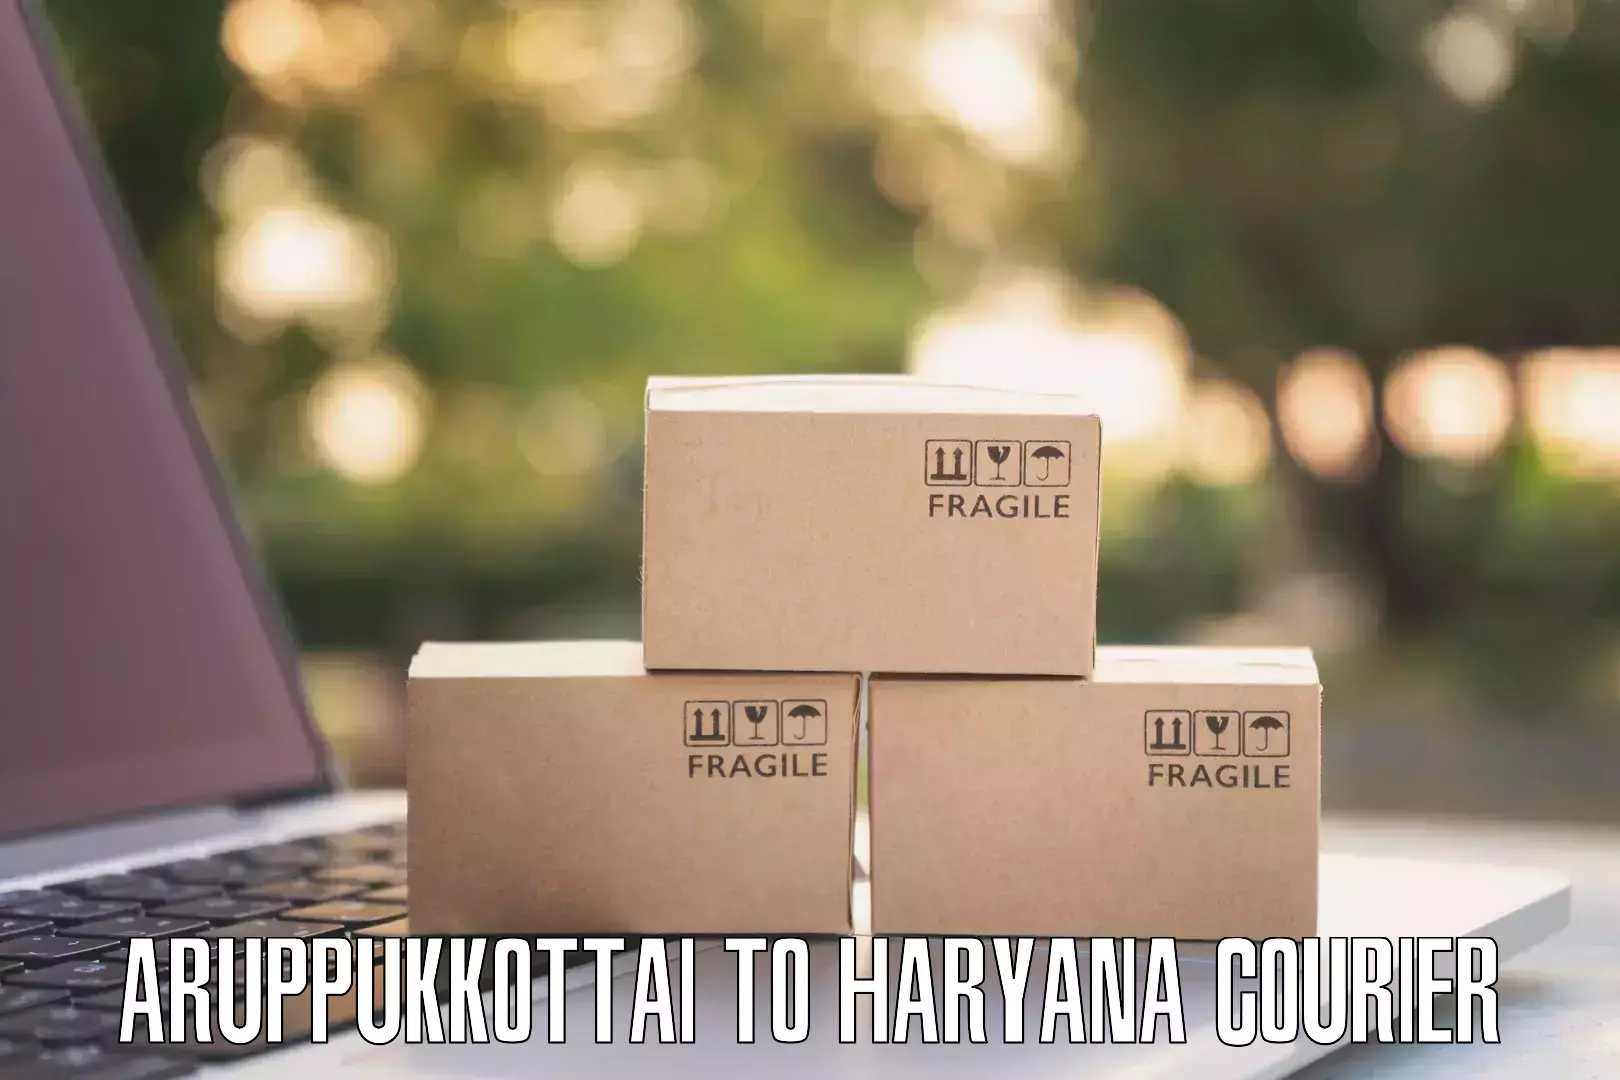 Sustainable courier practices Aruppukkottai to Rewari